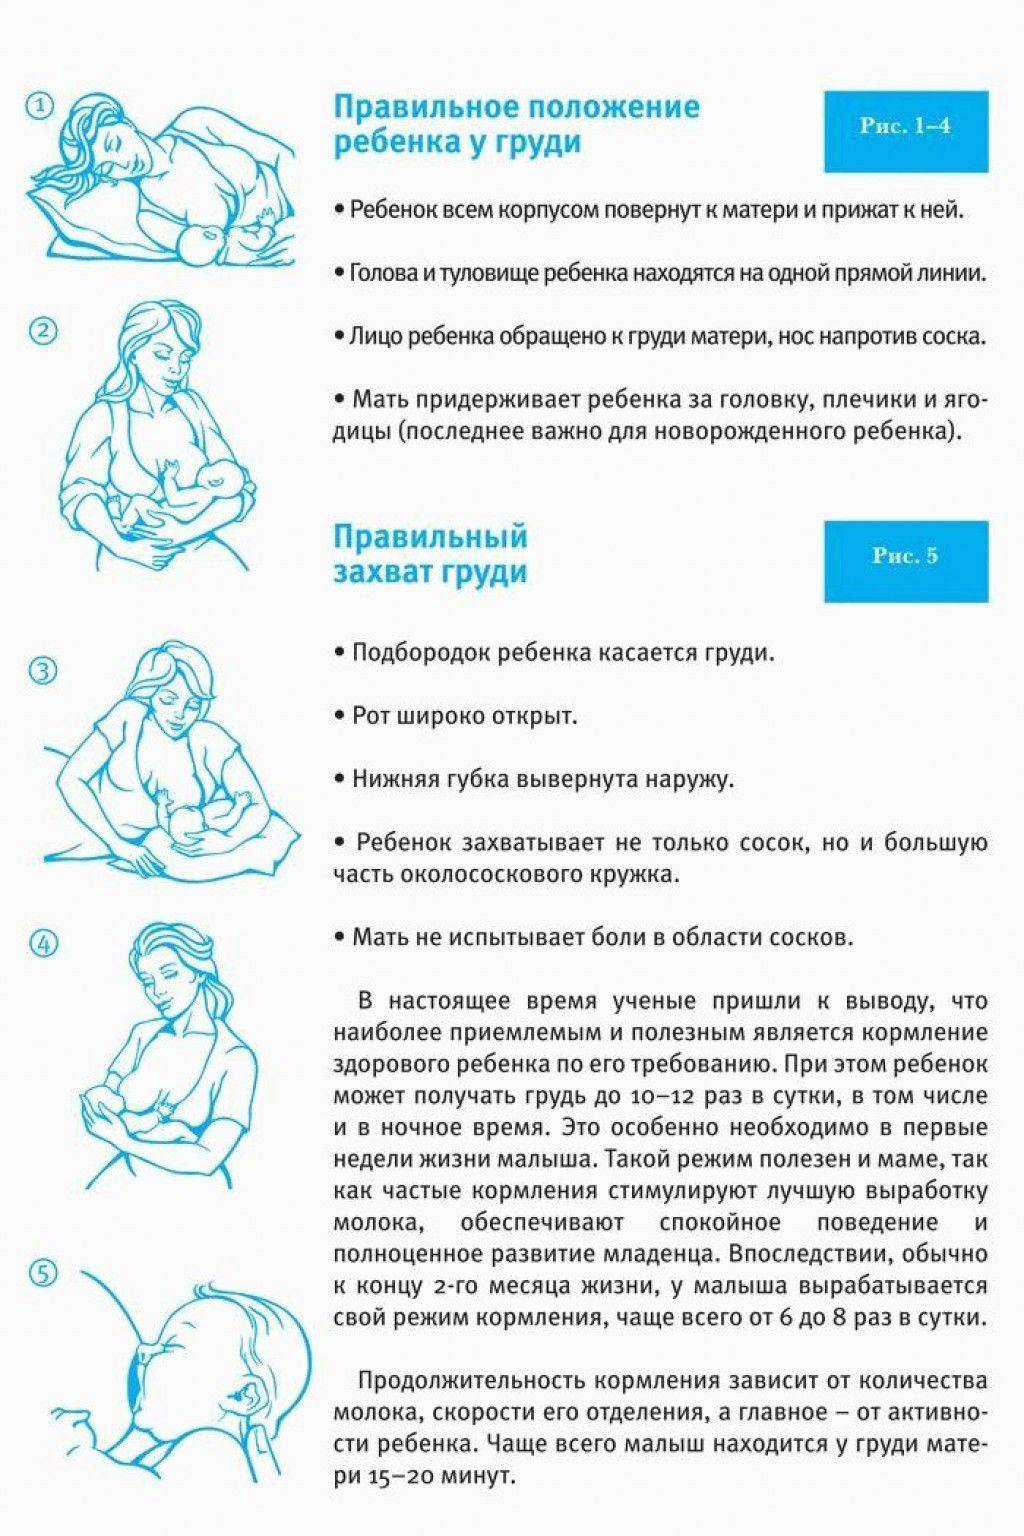 Техника вскармливания. Как правильно приложить ребенка к грудному вскармливанию. Правильное положение для кормления новорожденного грудным молоком. Как правильно приложить ребенка к грудному вскармливанию лежа. Правильное положение младенца при грудном вскармливании.